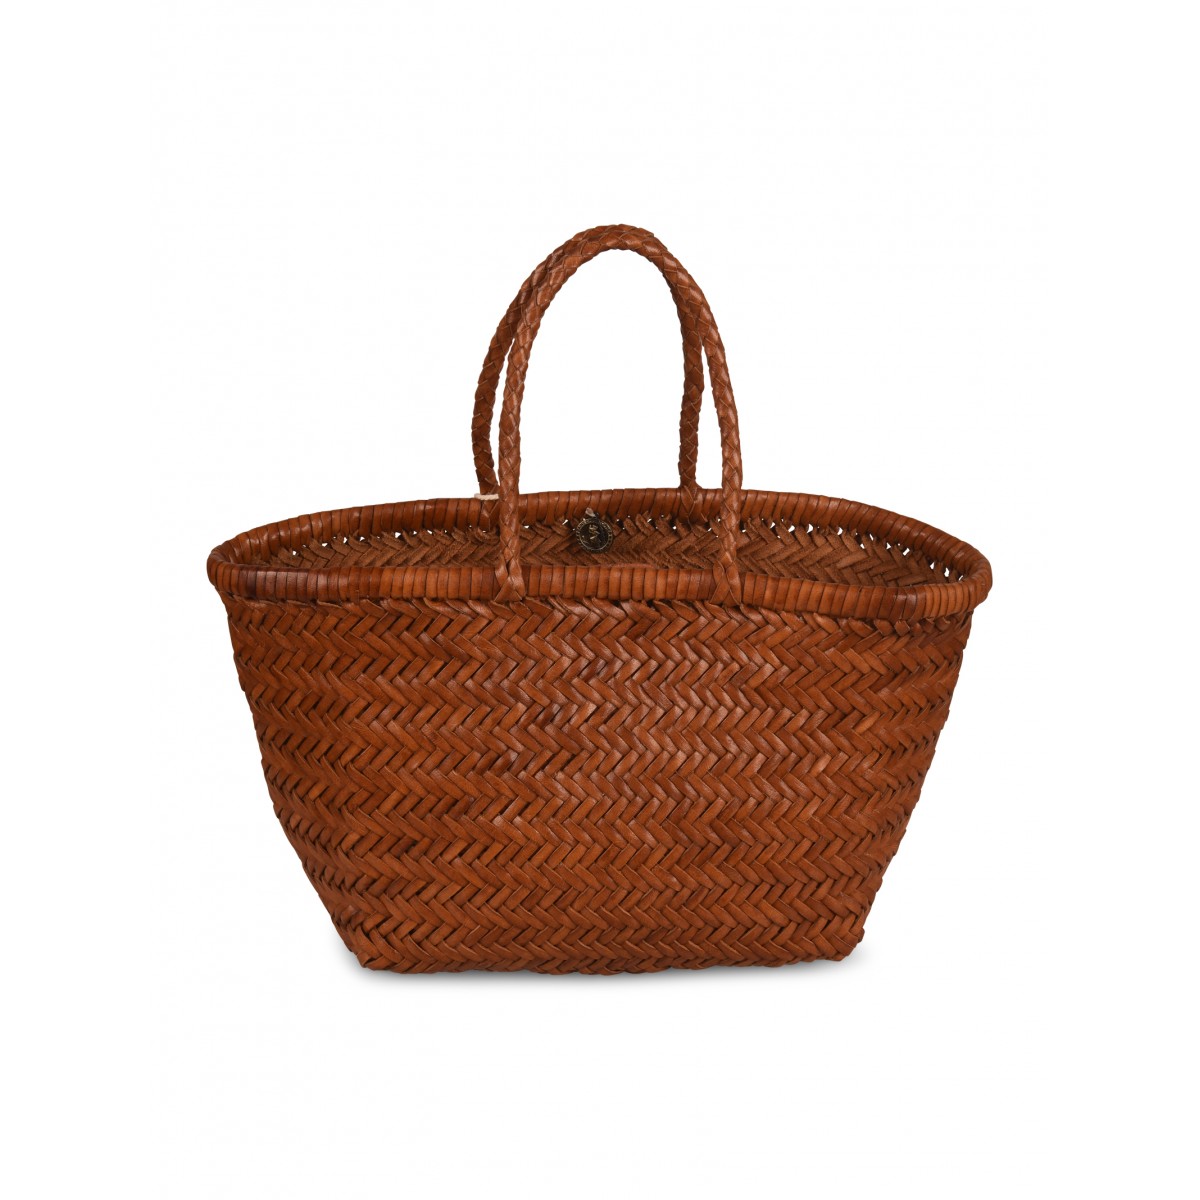 British Tan Handwoven Basket Tote Bag